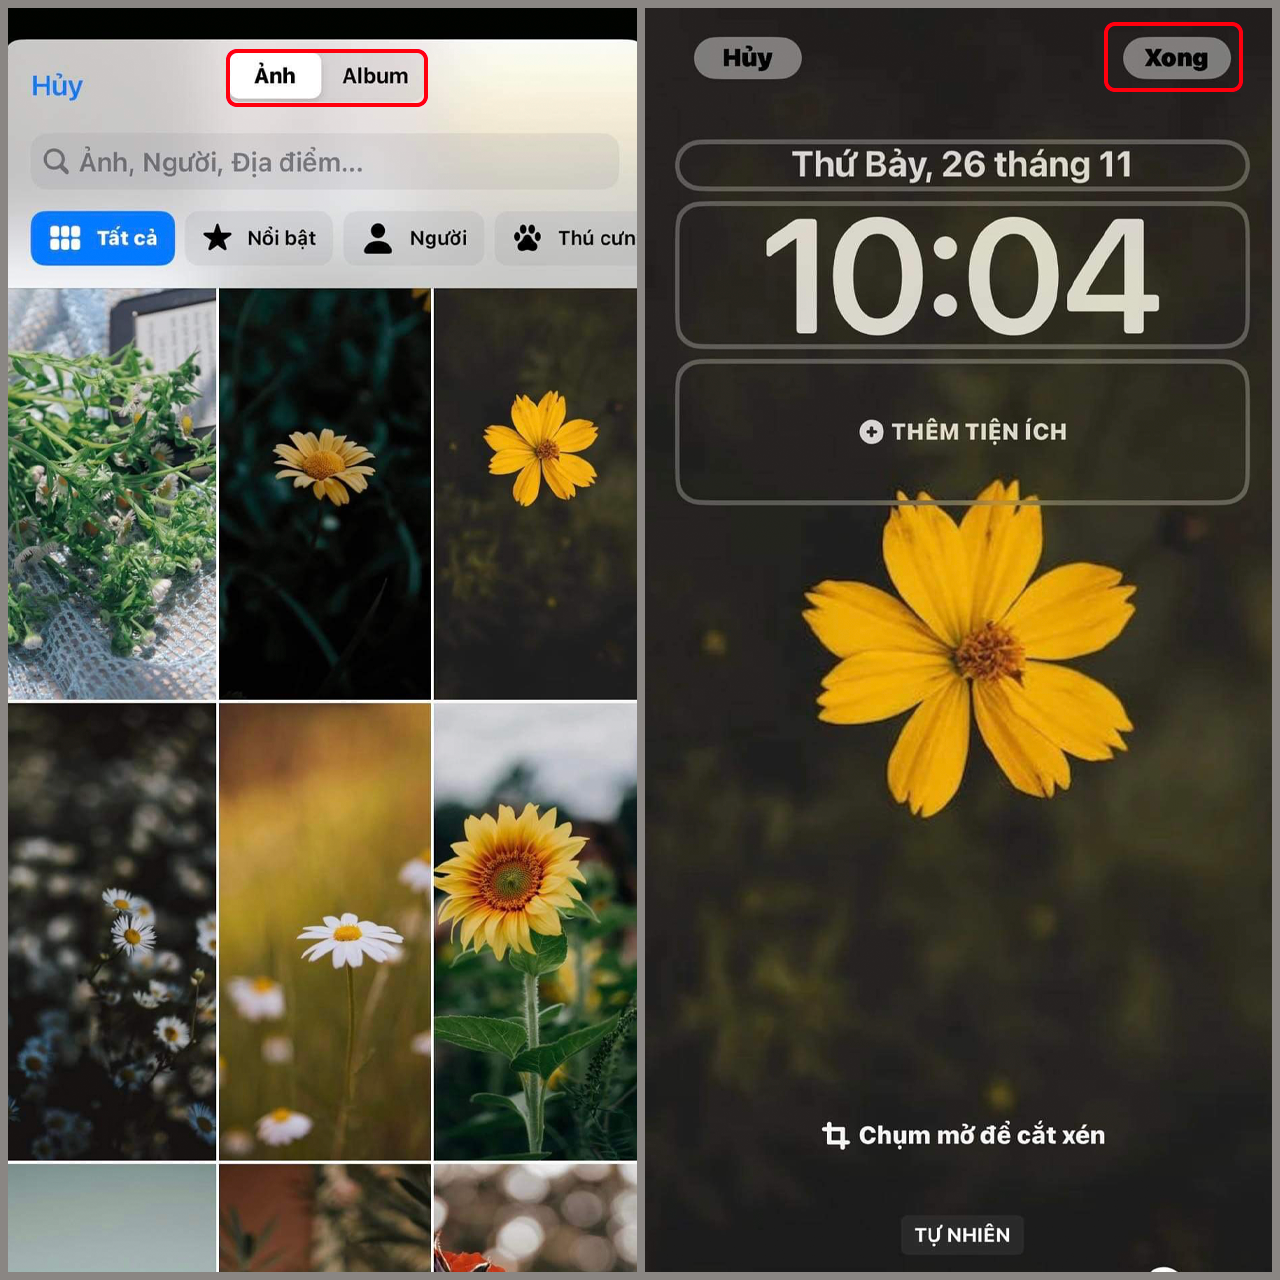 400.000+ ảnh đẹp nhất về Hình Nền Iphone · Tải xuống miễn phí 100% · Ảnh có  sẵn của Pexels